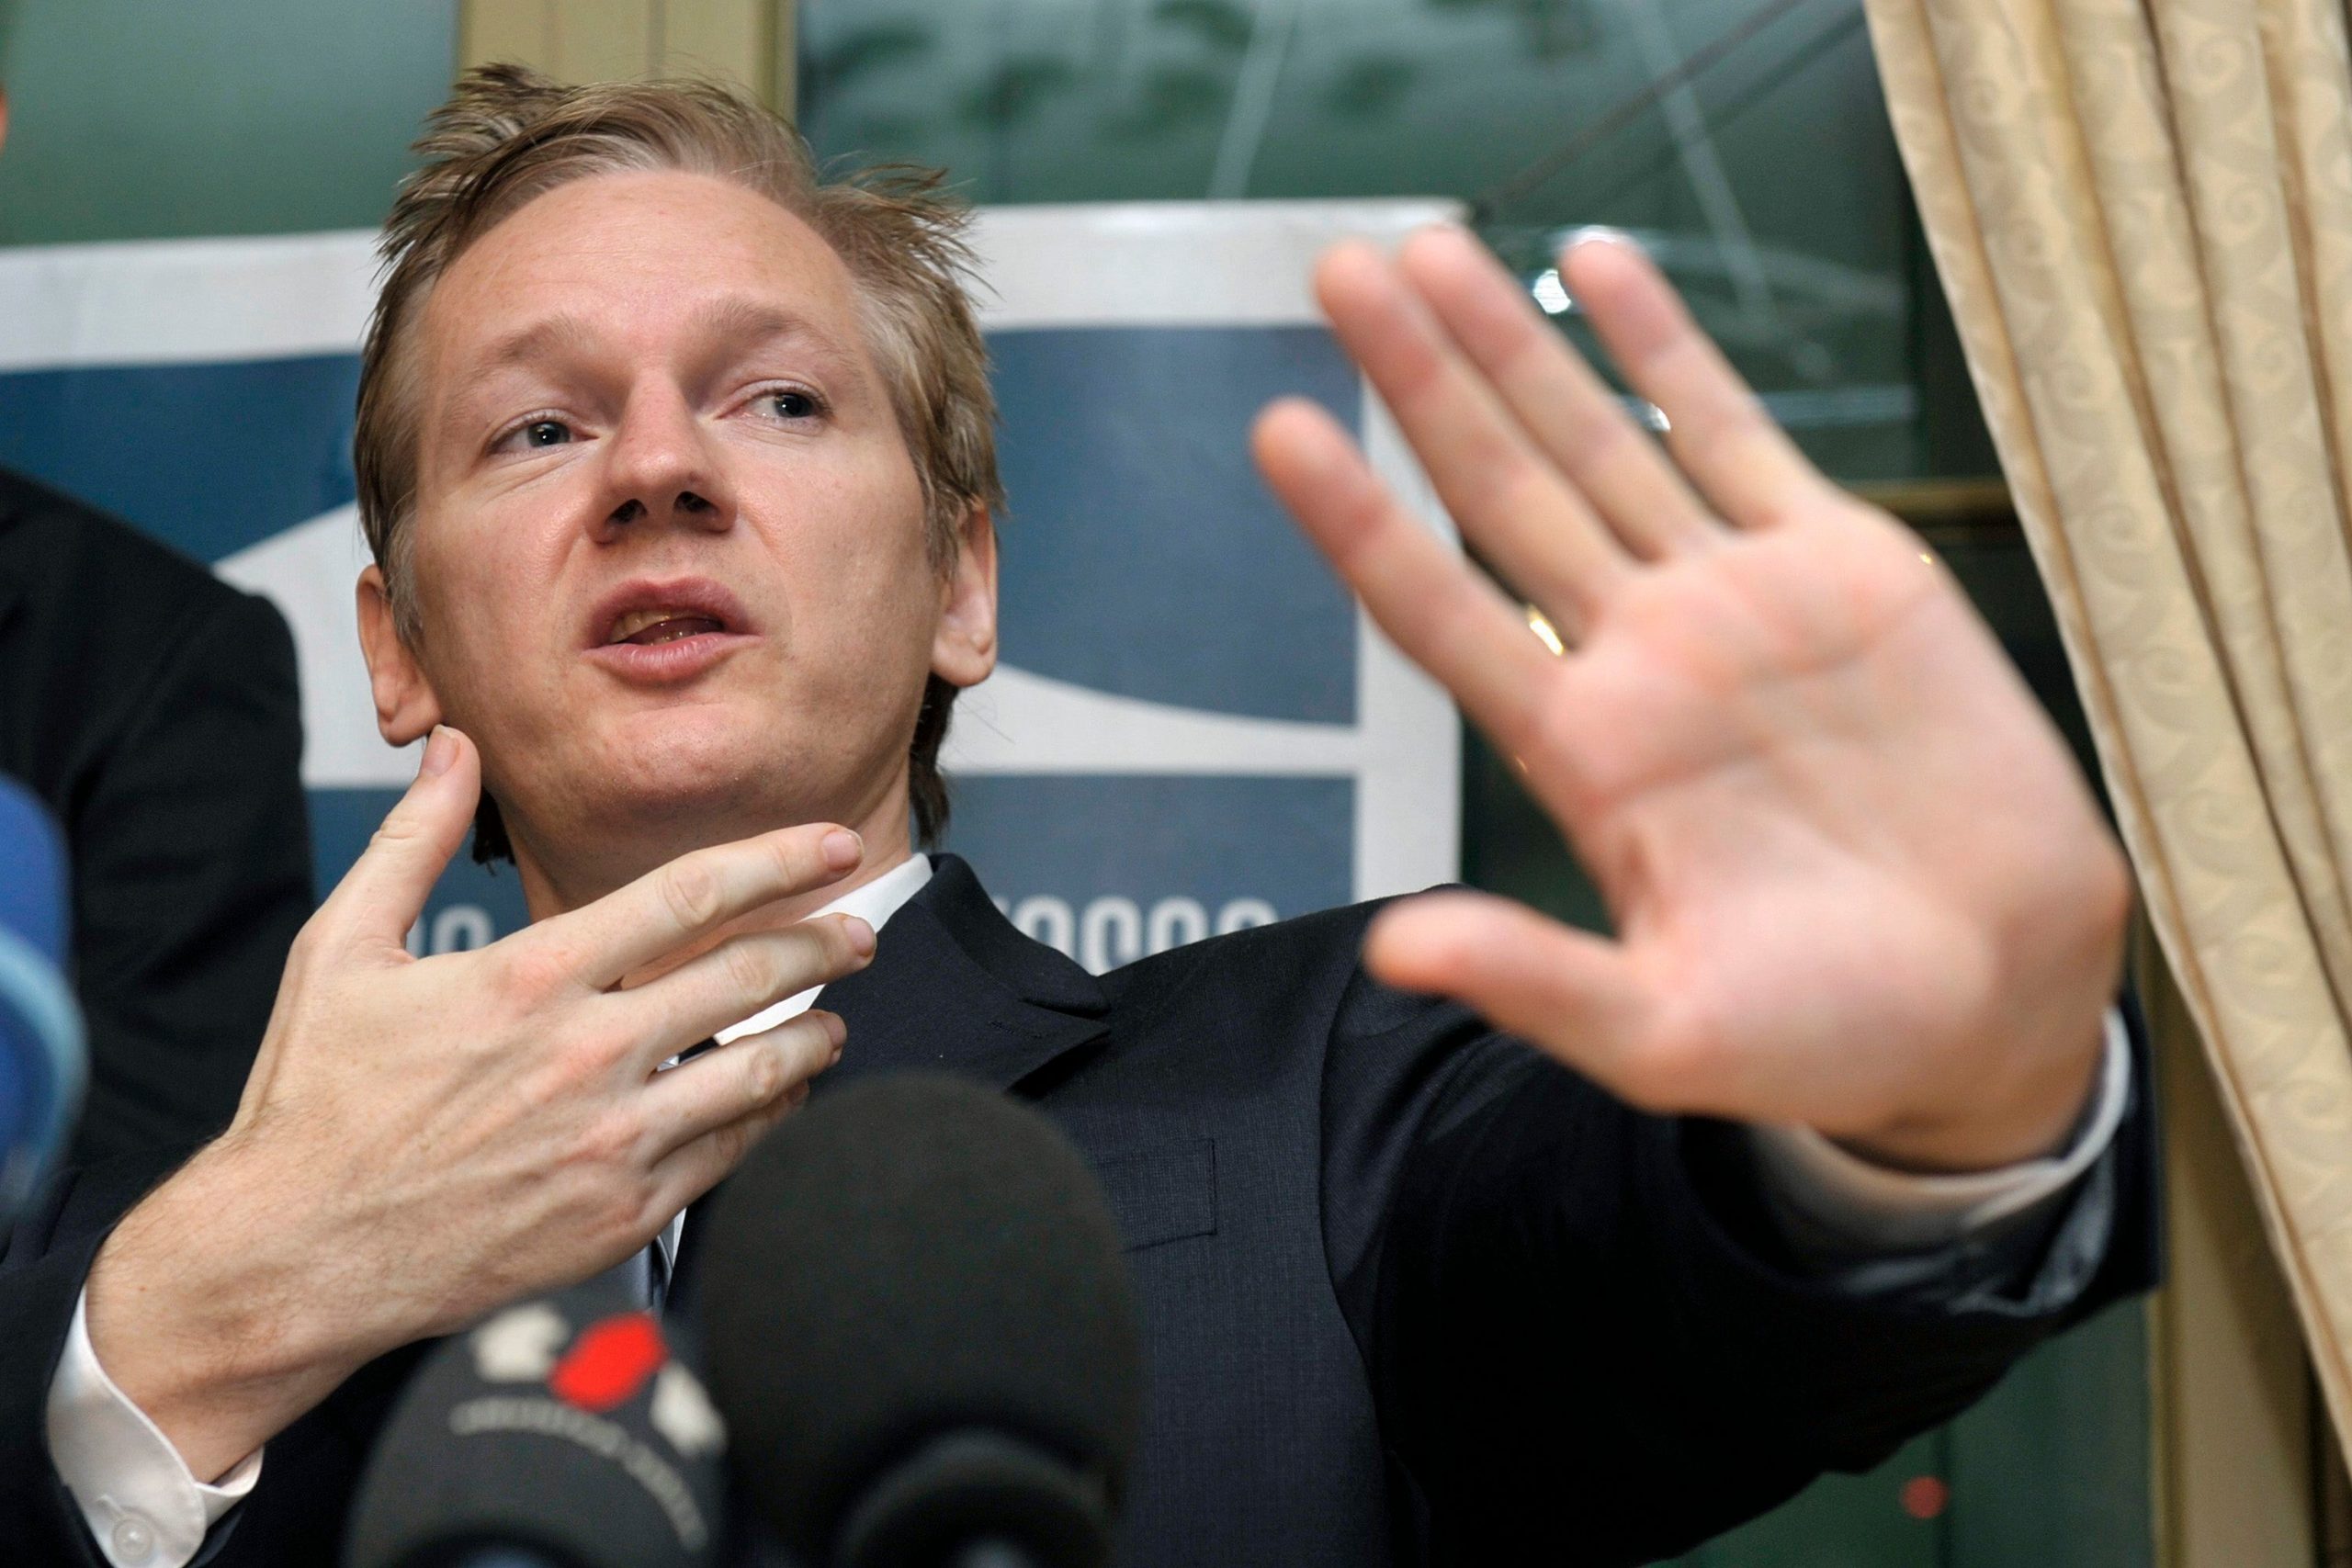 UK court denies bail to WikiLeaks founder Julian Assange